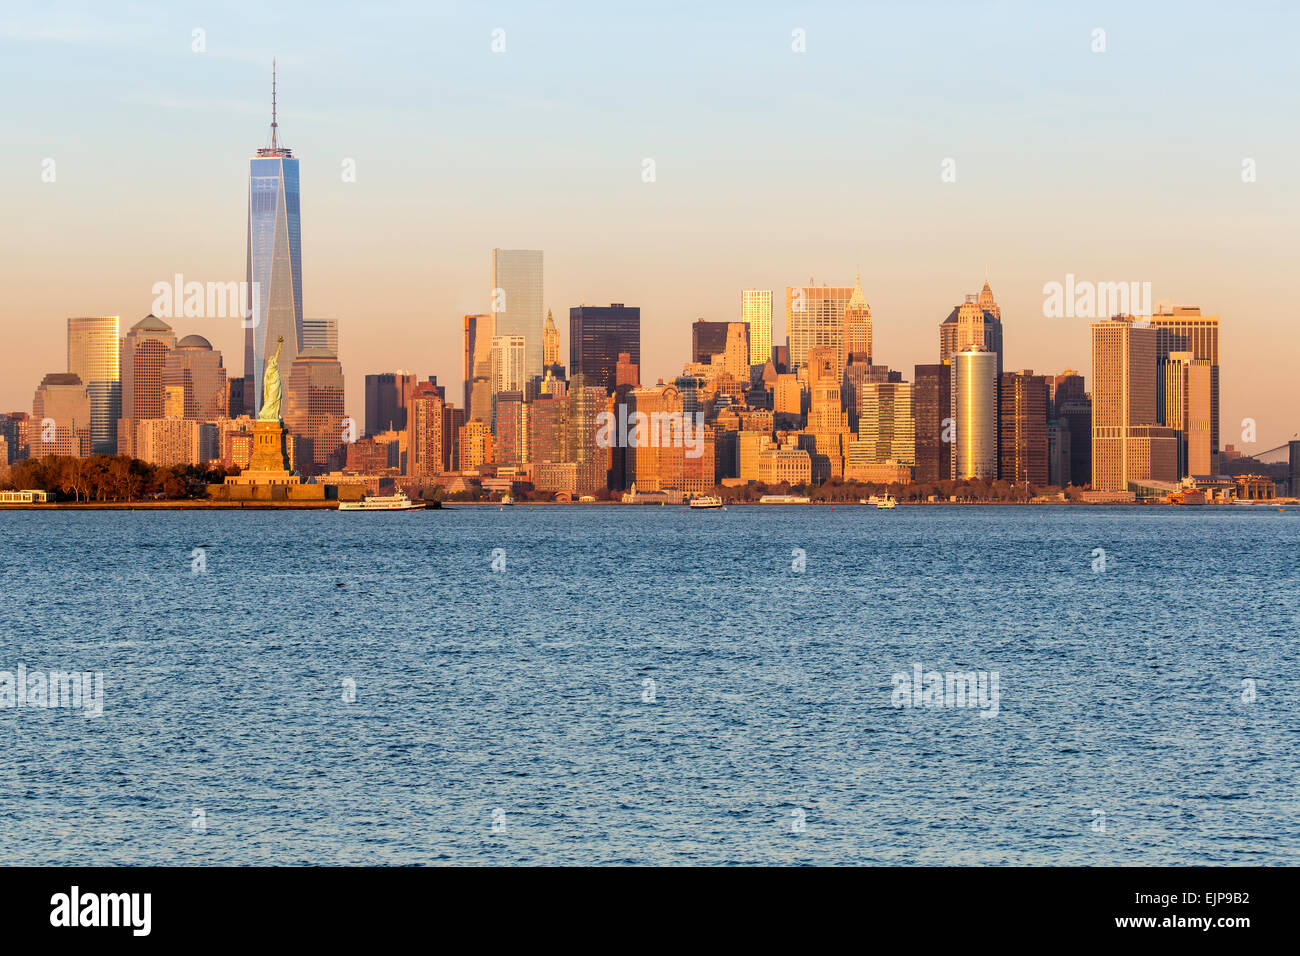 Statua della Libertà, One World Trade Center e il centro di Manhattan attraverso il fiume Hudson, New York, Stati Uniti d'America Foto Stock